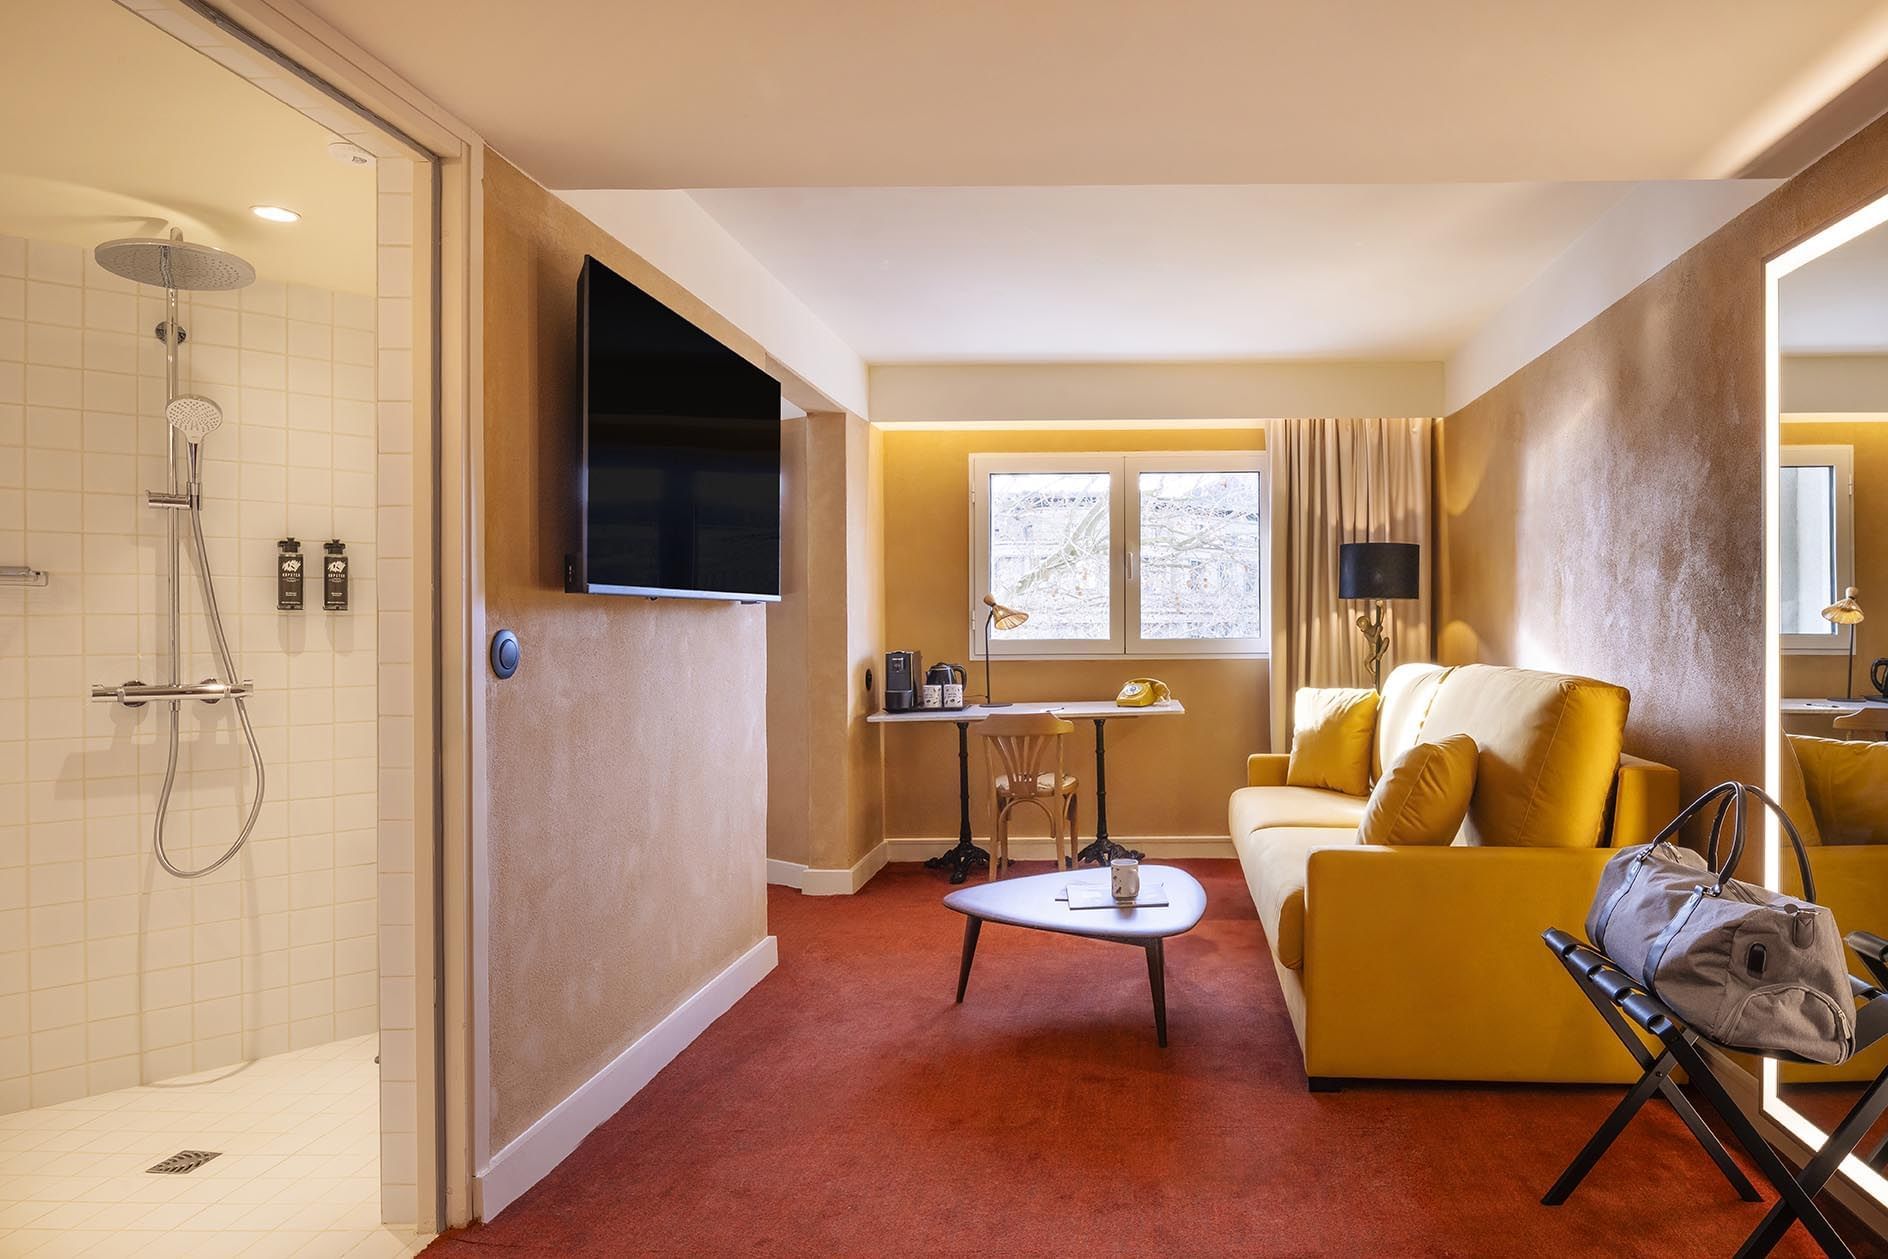 Kopster Hotel Paris Porte de Versailles - Accommodation